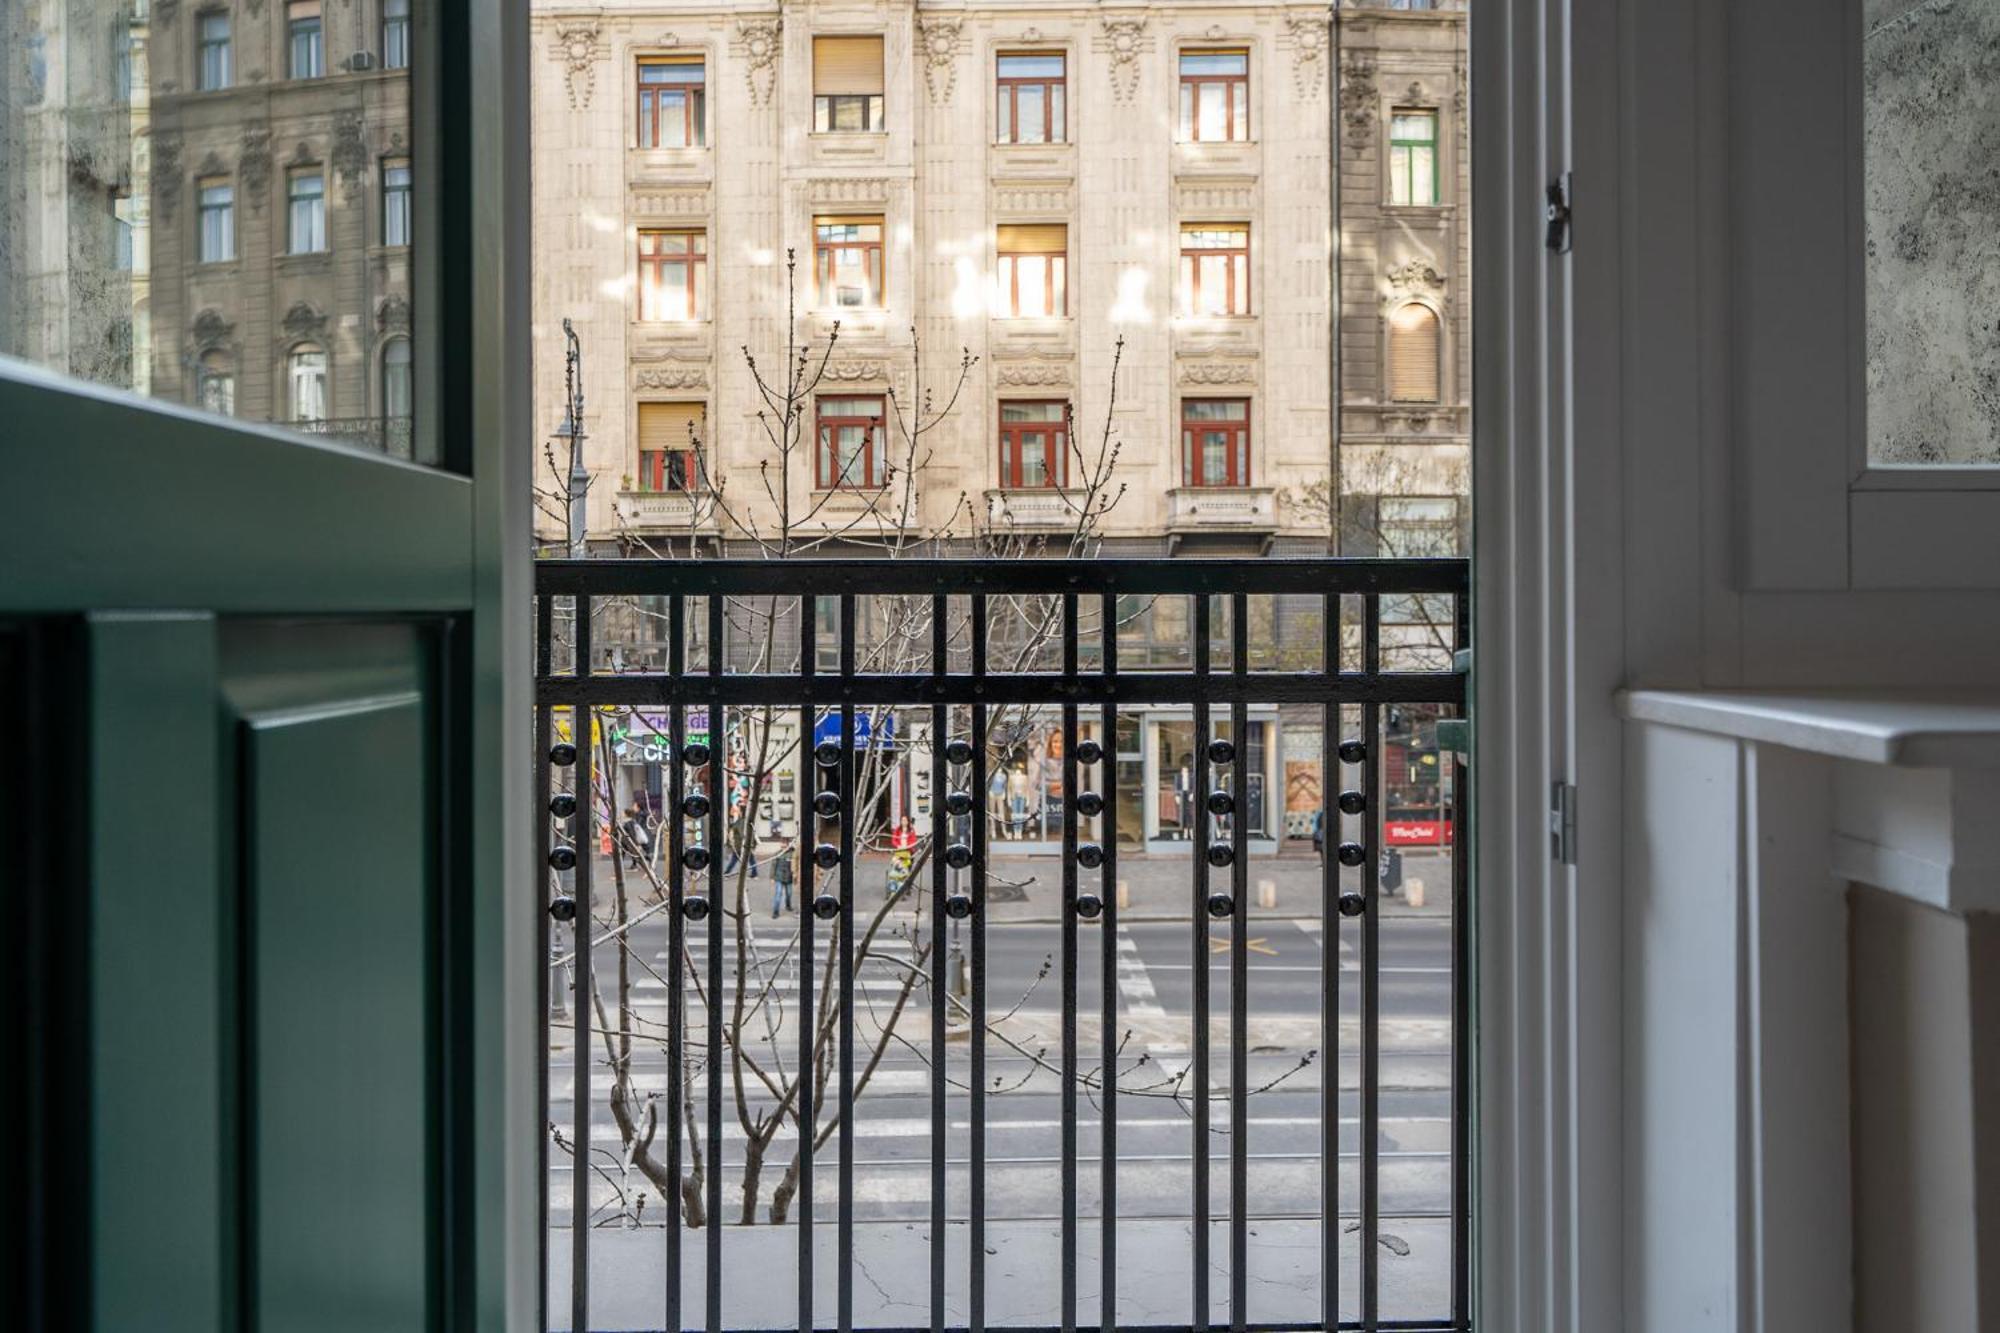 Karoly Boutique Suites, Best Location By Bqa Budapest Eksteriør bilde